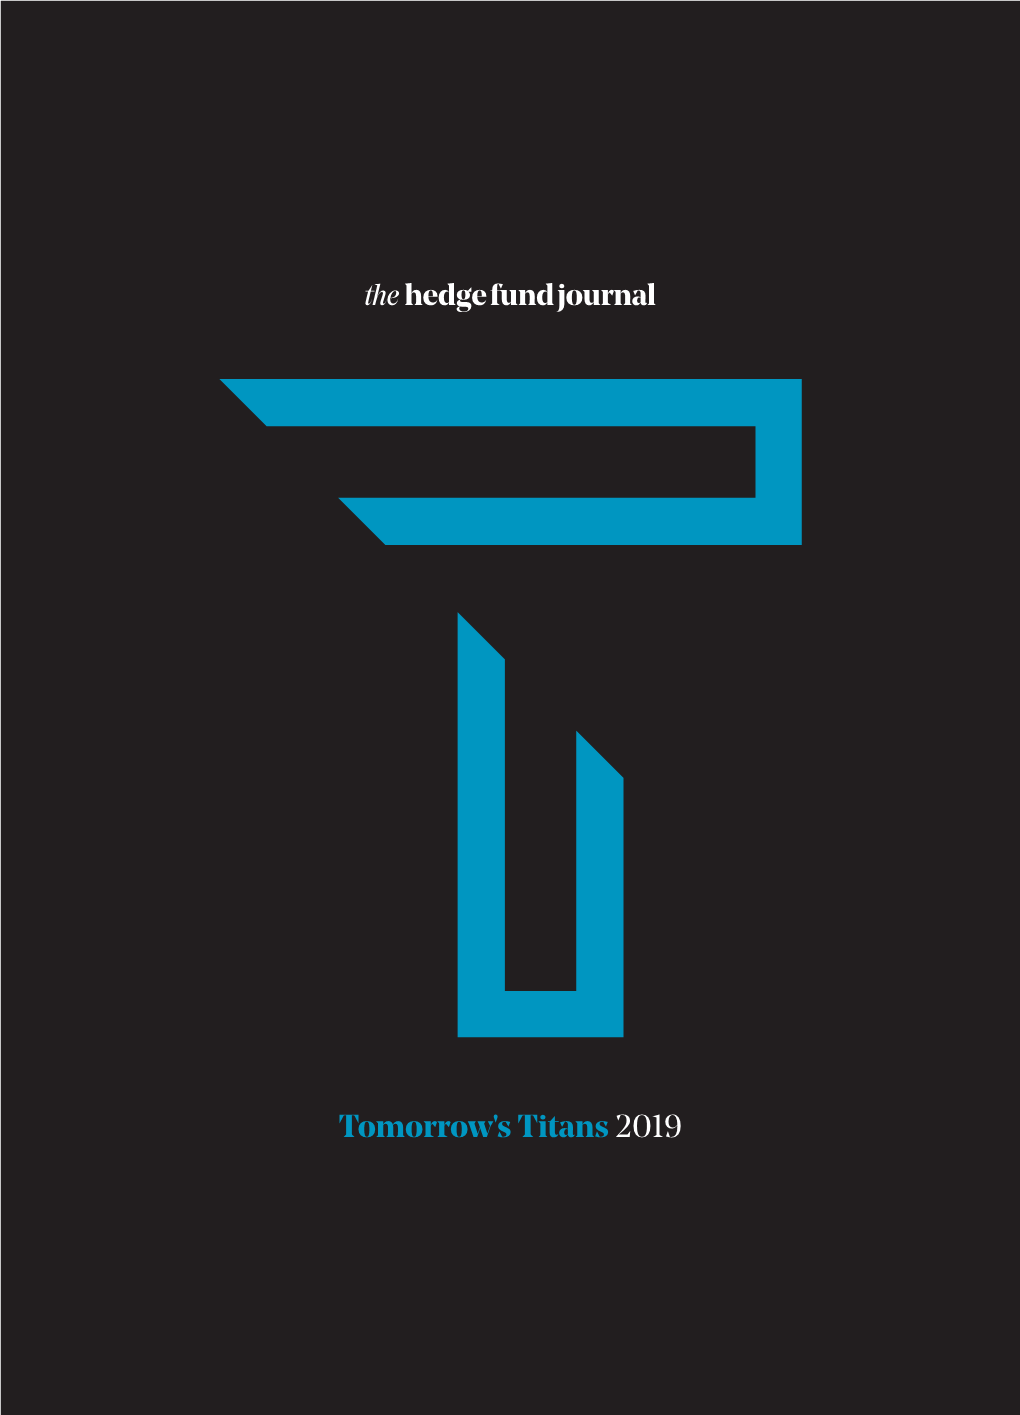 Tomorrow's Titans 2019 TOMORROW's TITANS 2019